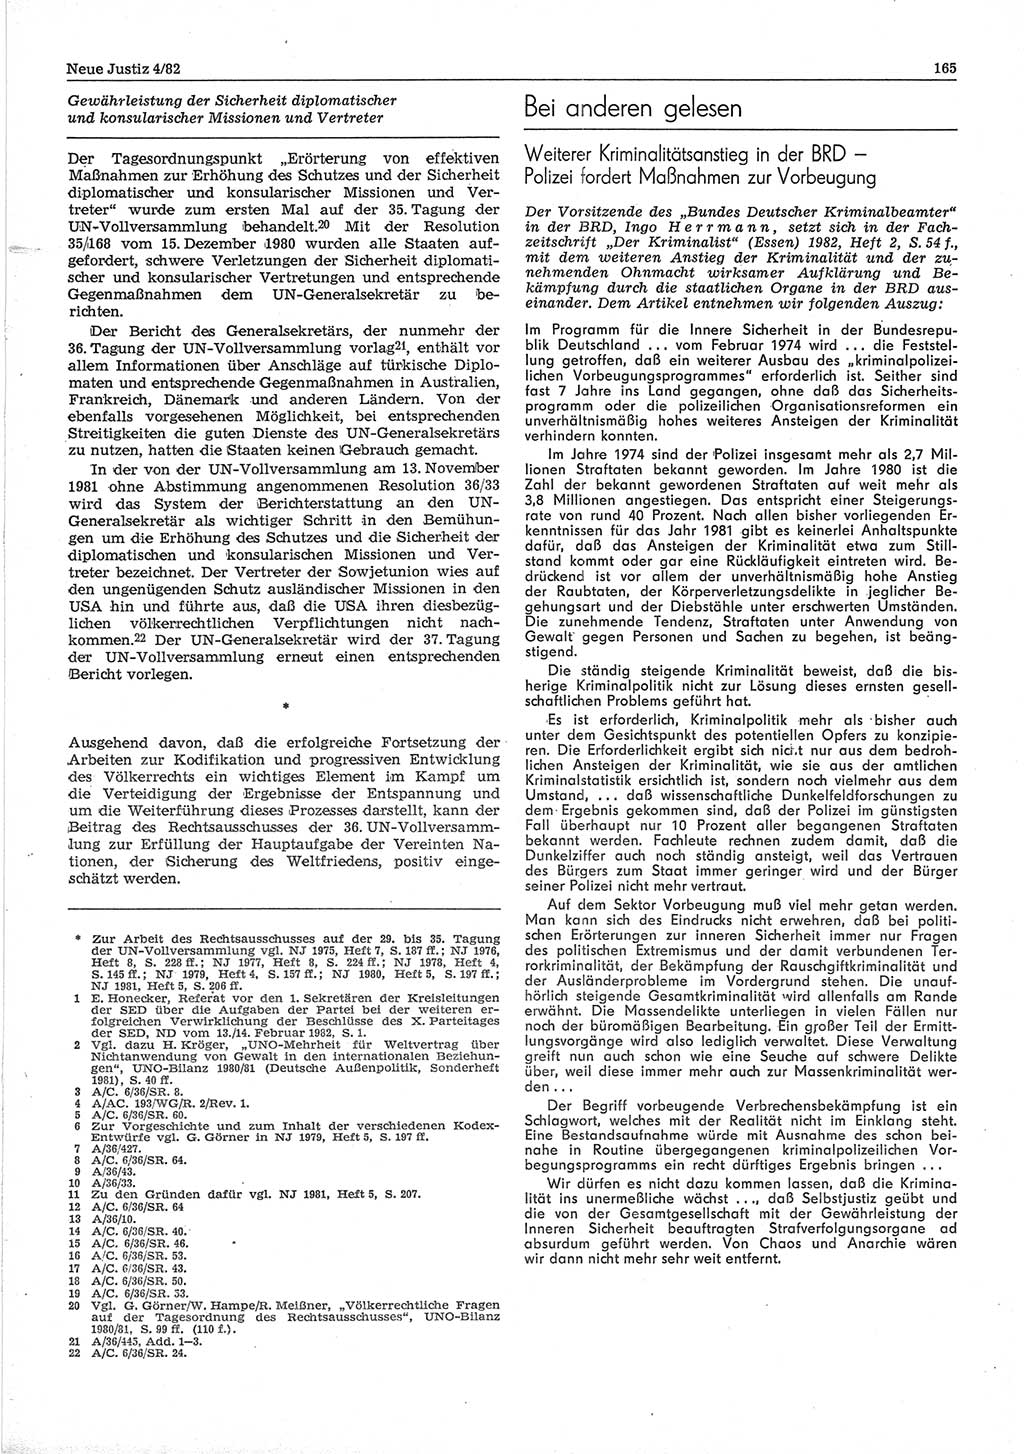 Neue Justiz (NJ), Zeitschrift für sozialistisches Recht und Gesetzlichkeit [Deutsche Demokratische Republik (DDR)], 36. Jahrgang 1982, Seite 165 (NJ DDR 1982, S. 165)